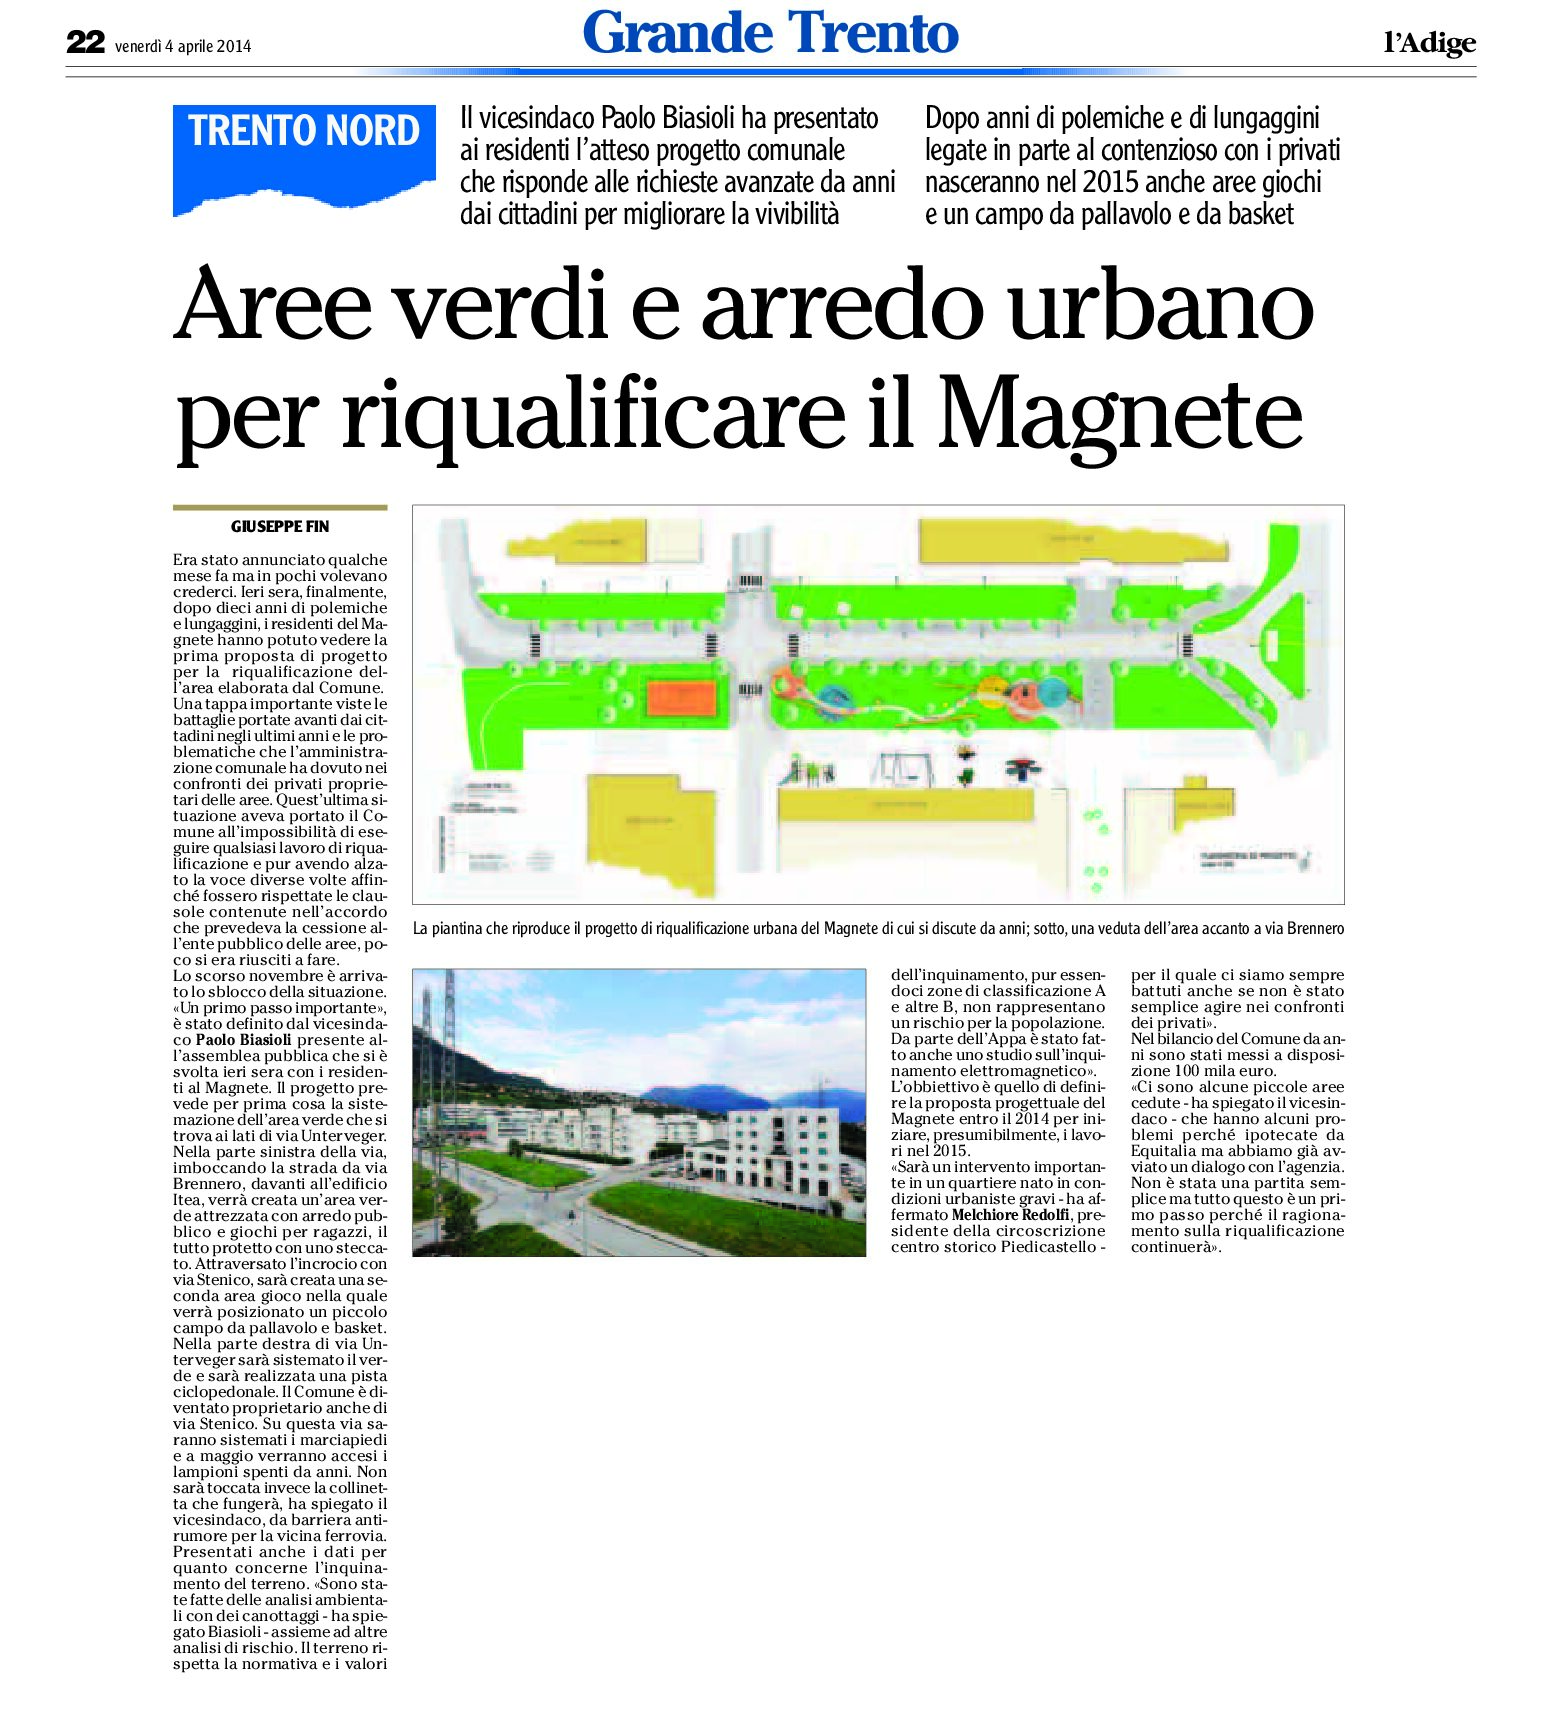 Trento nord: aree verdi e arredo urbano per riqualificare il Magnete